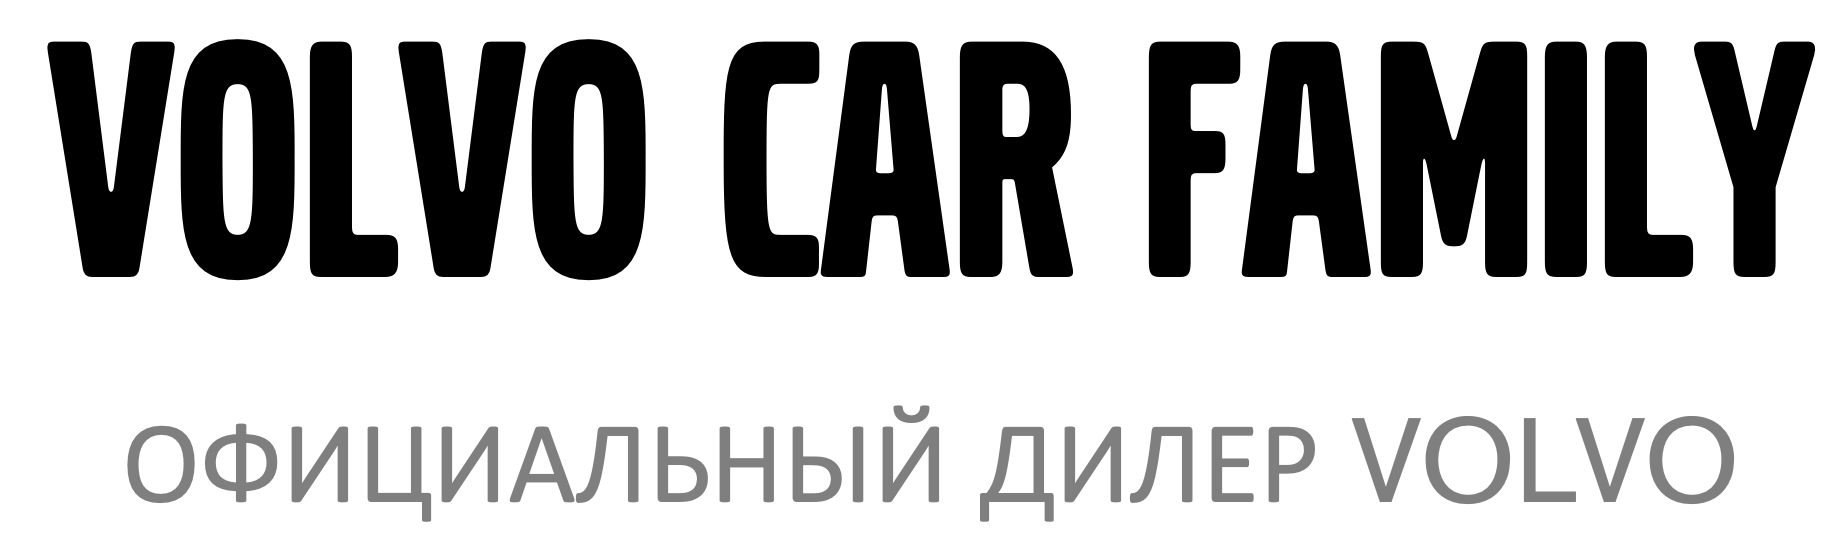 Карс фэмили санкт петербург. Вольво кар Фэмили. Volvo car Family Санкт-Петербург. Car Family логотип. Volvo car Family Санкт-Петербург Жукова.